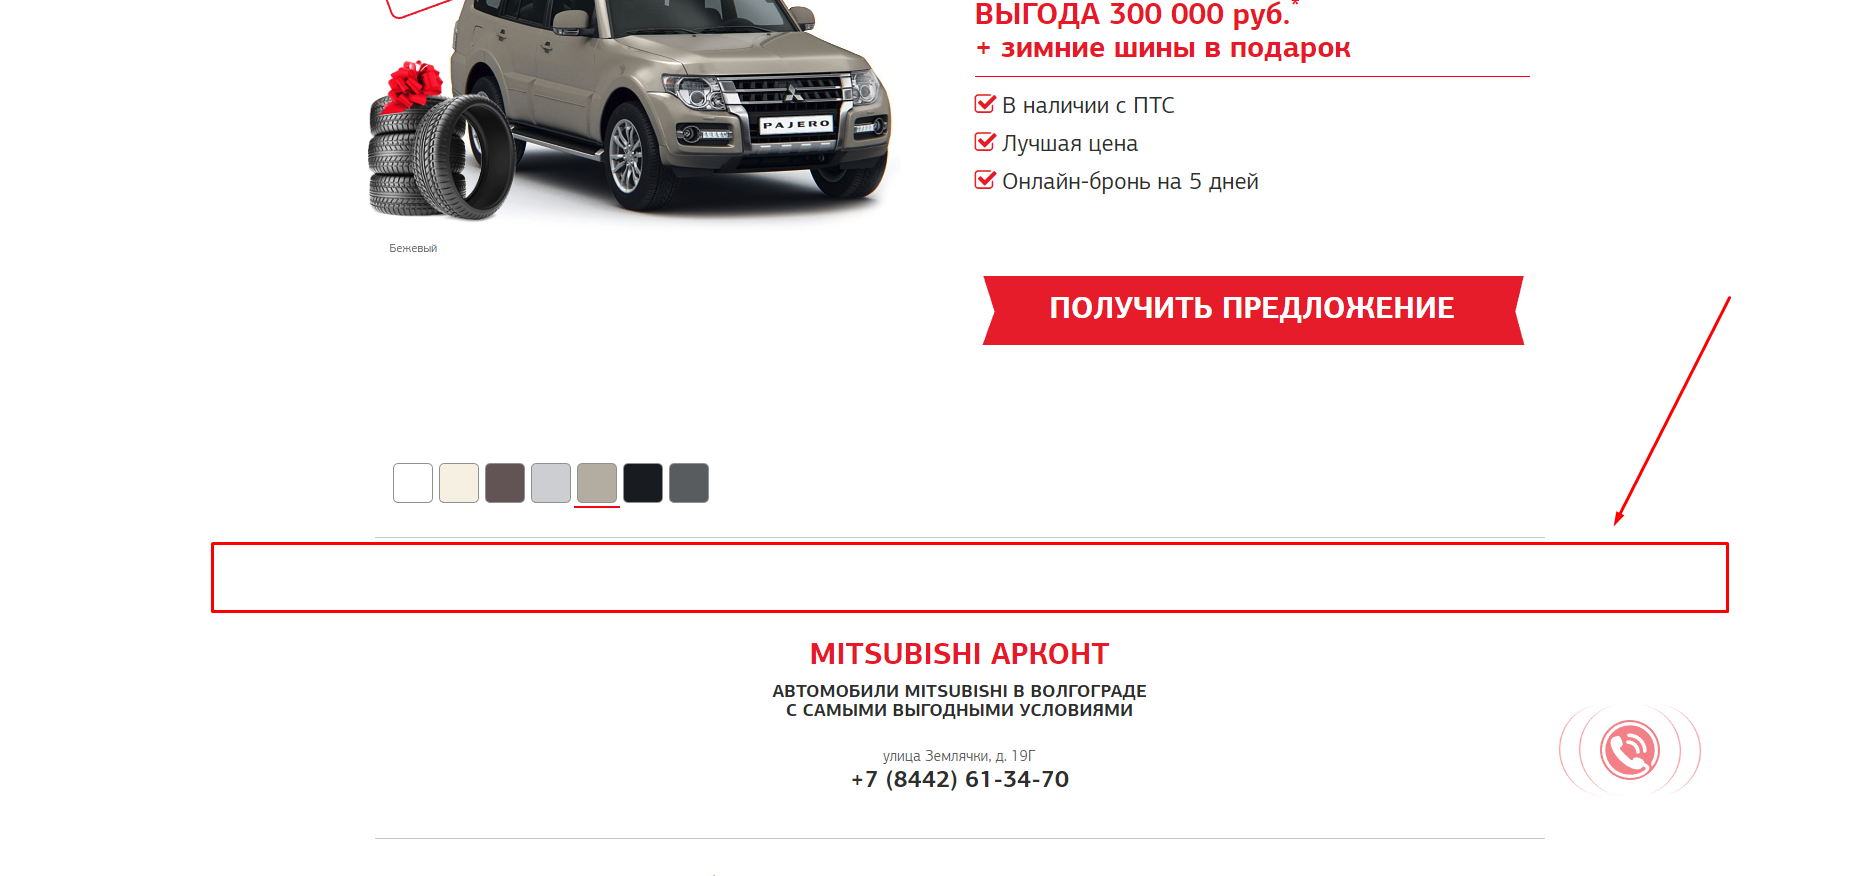 Запуск контекстной рекламы в Яндекс.Директе и Google Ads для автодилера Mitsubishi «Арконт» - рекомендации по сайту, выбор комплектации